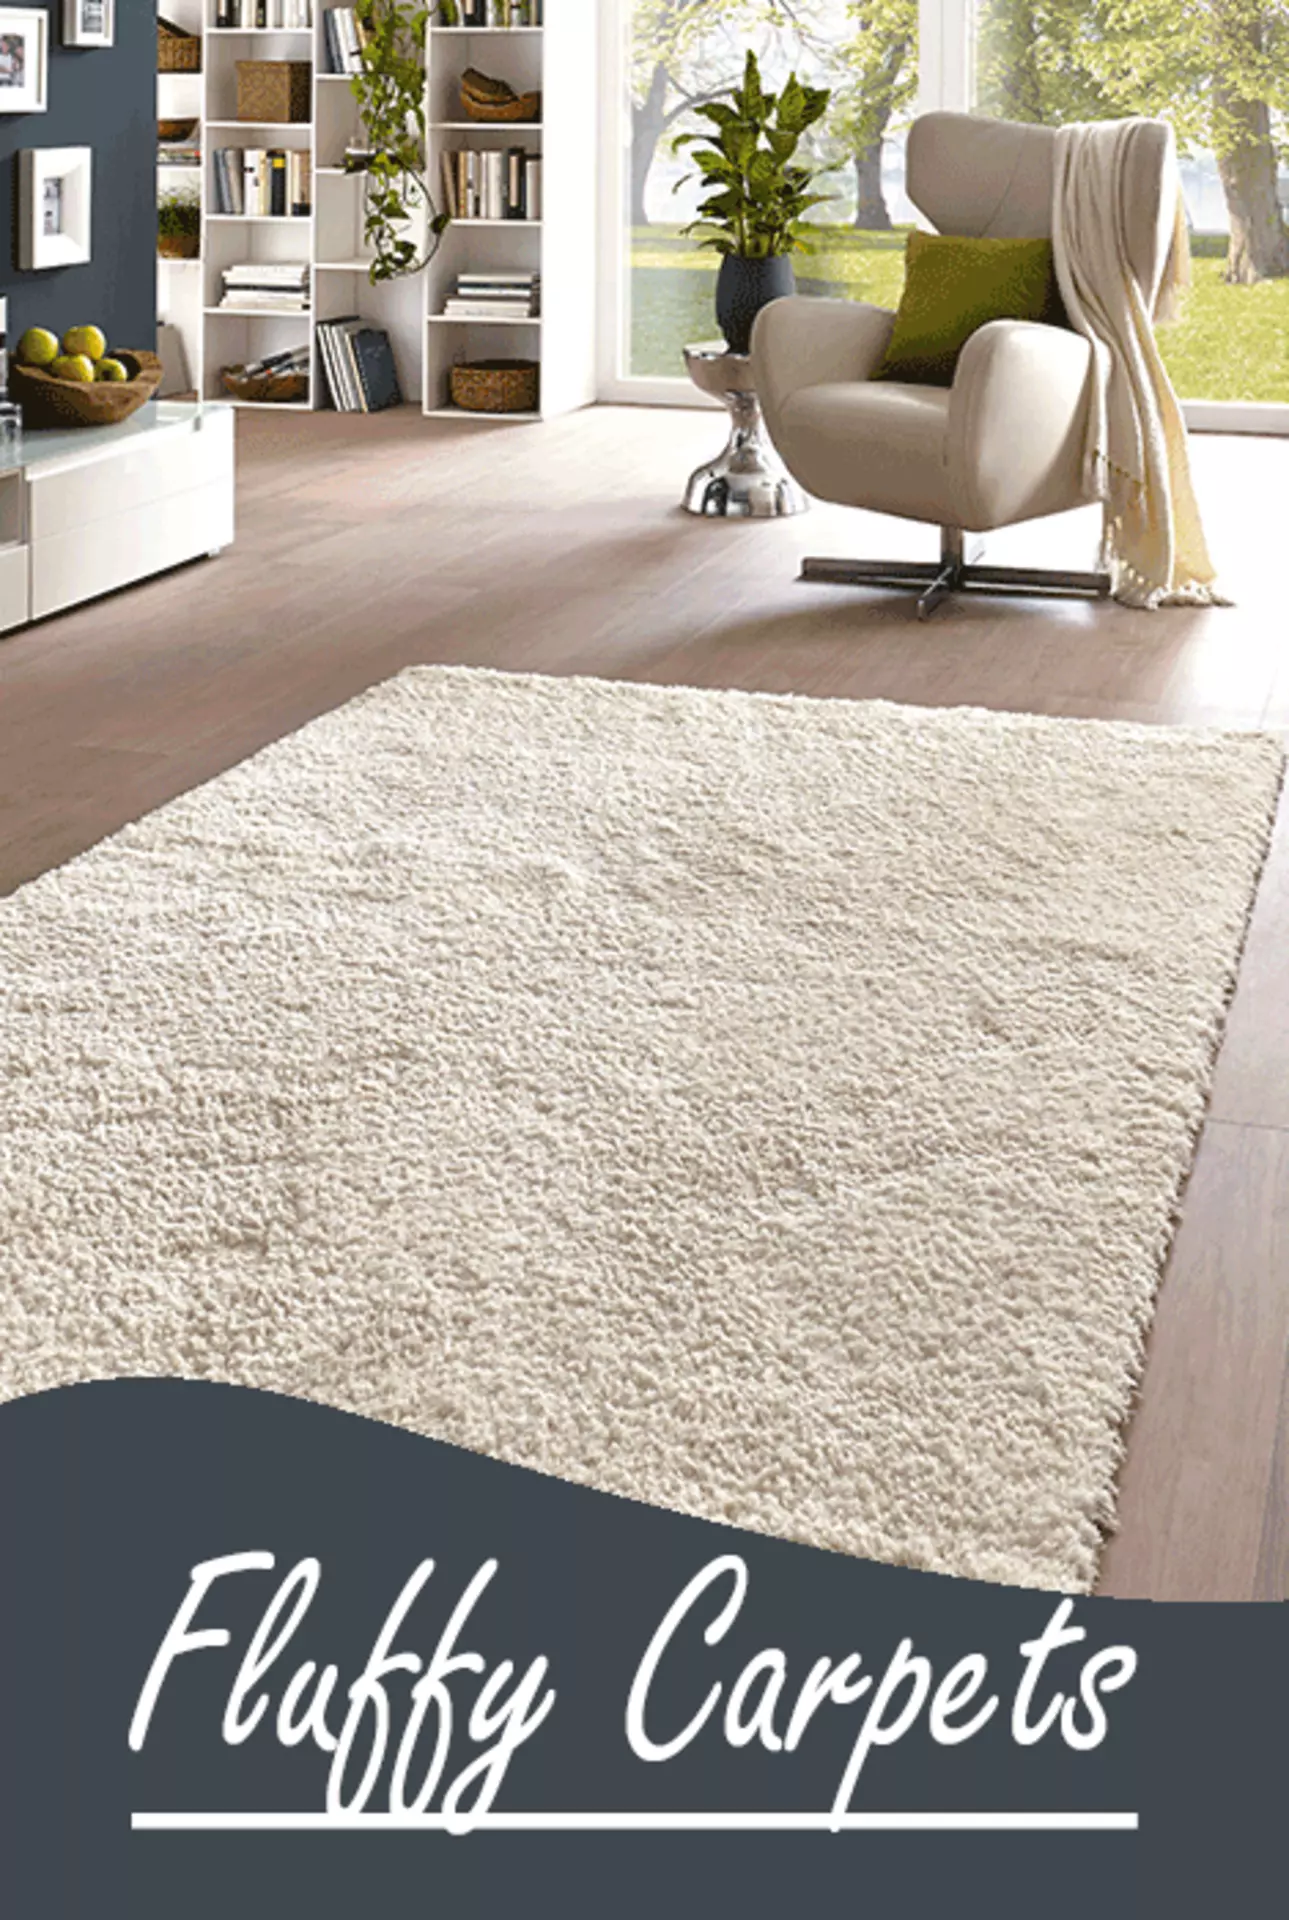 Wohntrend Fluffy Carpets - jetzt den Trend Hochflorteppiche entdecken